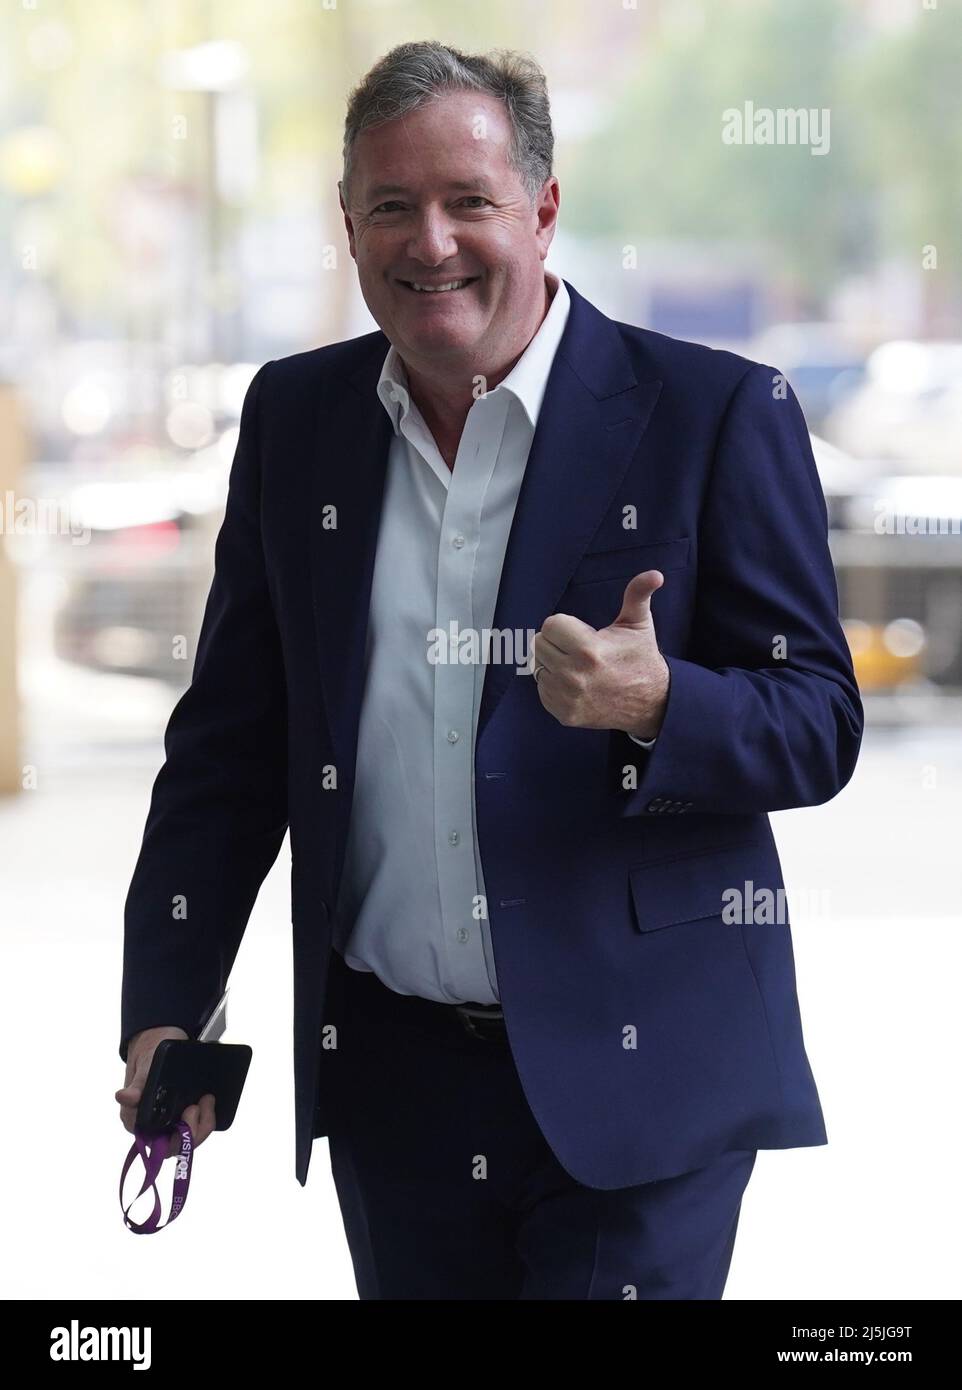 Piers Morgan arrive à la BBC Broadcasting House à Londres, pour apparaître sur le programme d'affaires courantes de BBC One, dimanche matin sous l'égide de Sophie Raworth. Date de la photo: Dimanche 24 avril 2022. Banque D'Images